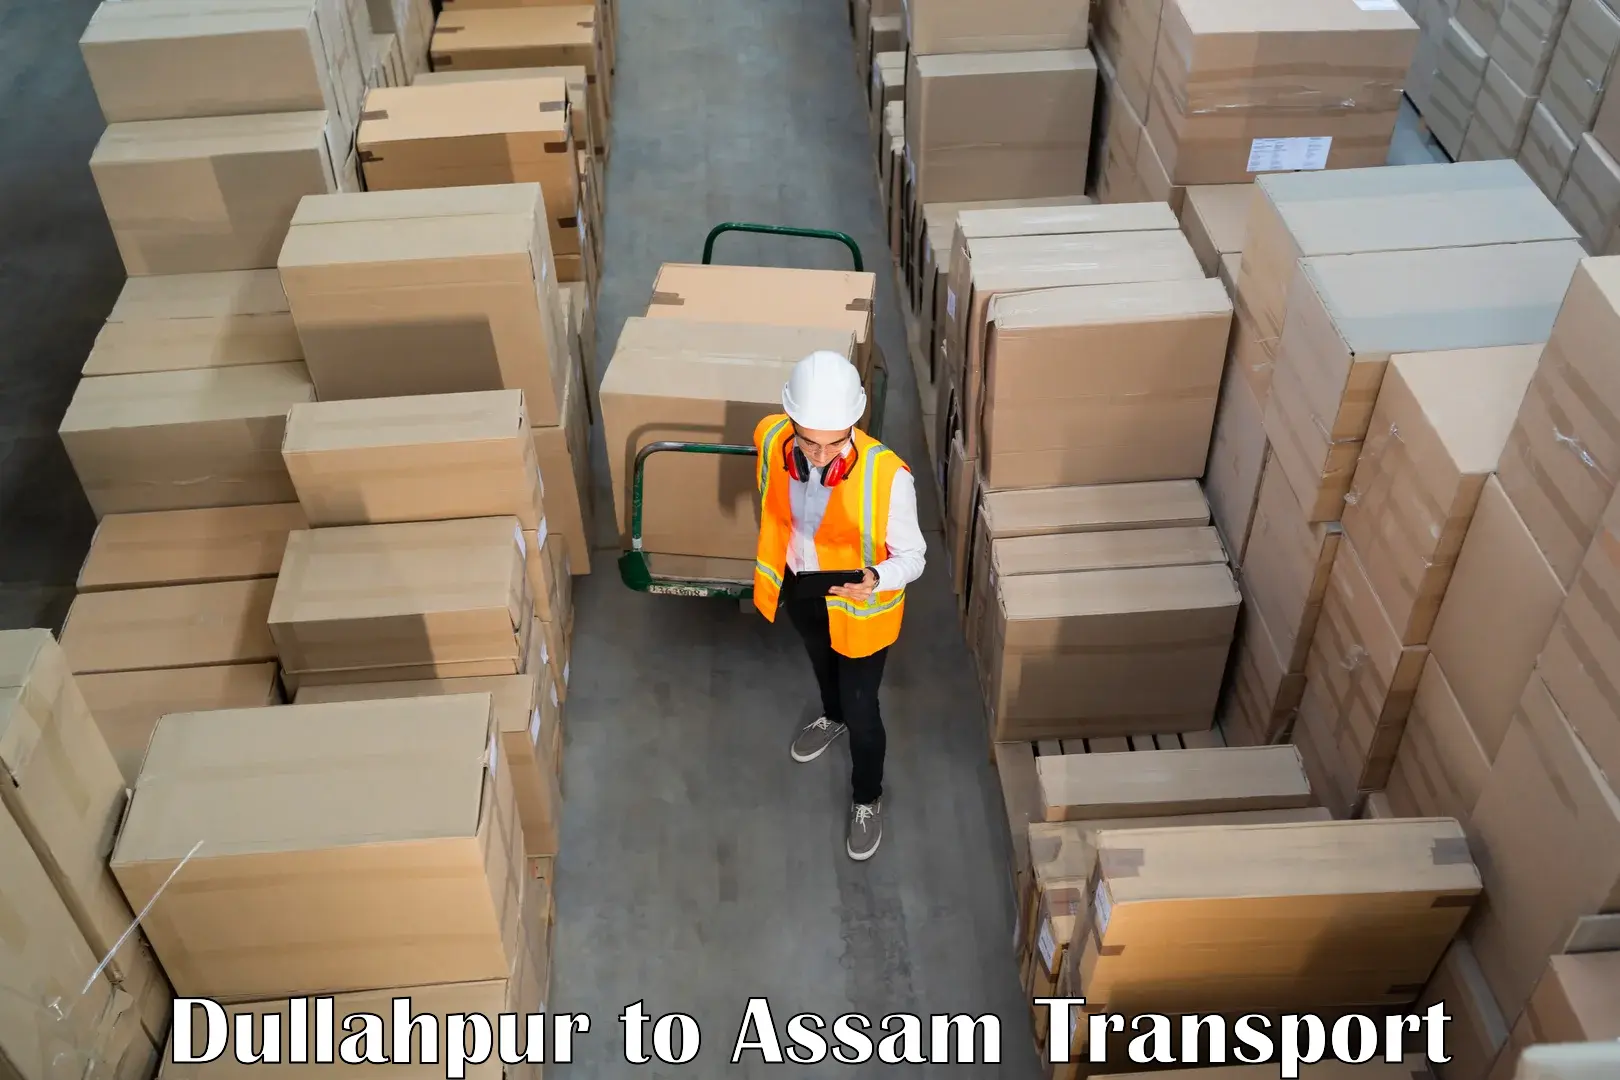 Air freight transport services Dullahpur to Dhupdhara